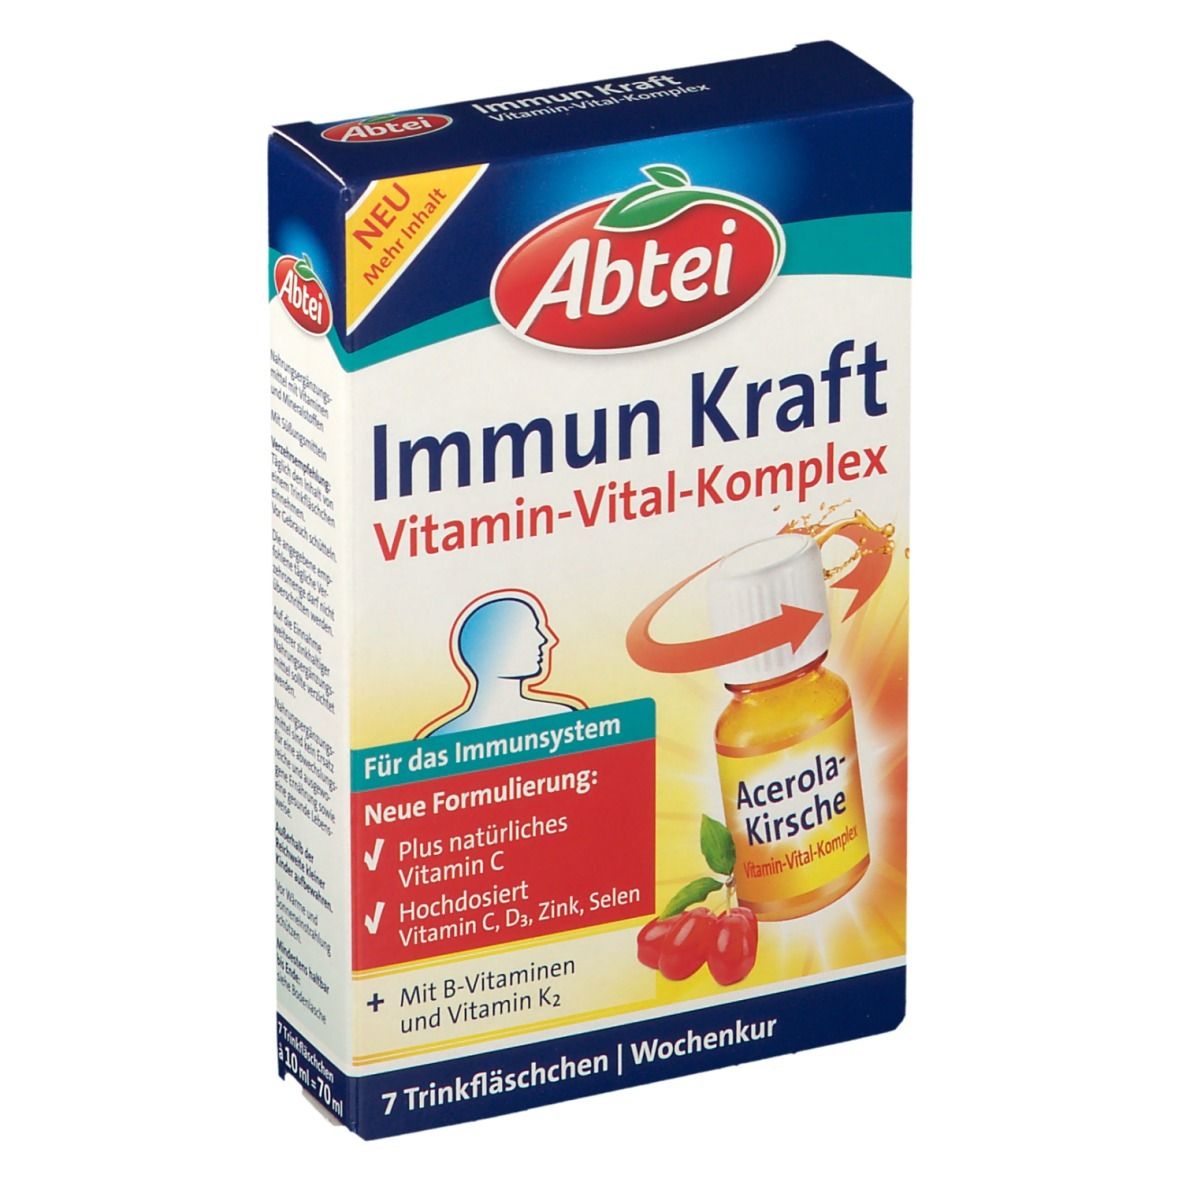 Abtei Immun Kraft Vitamin Vital-Komplex